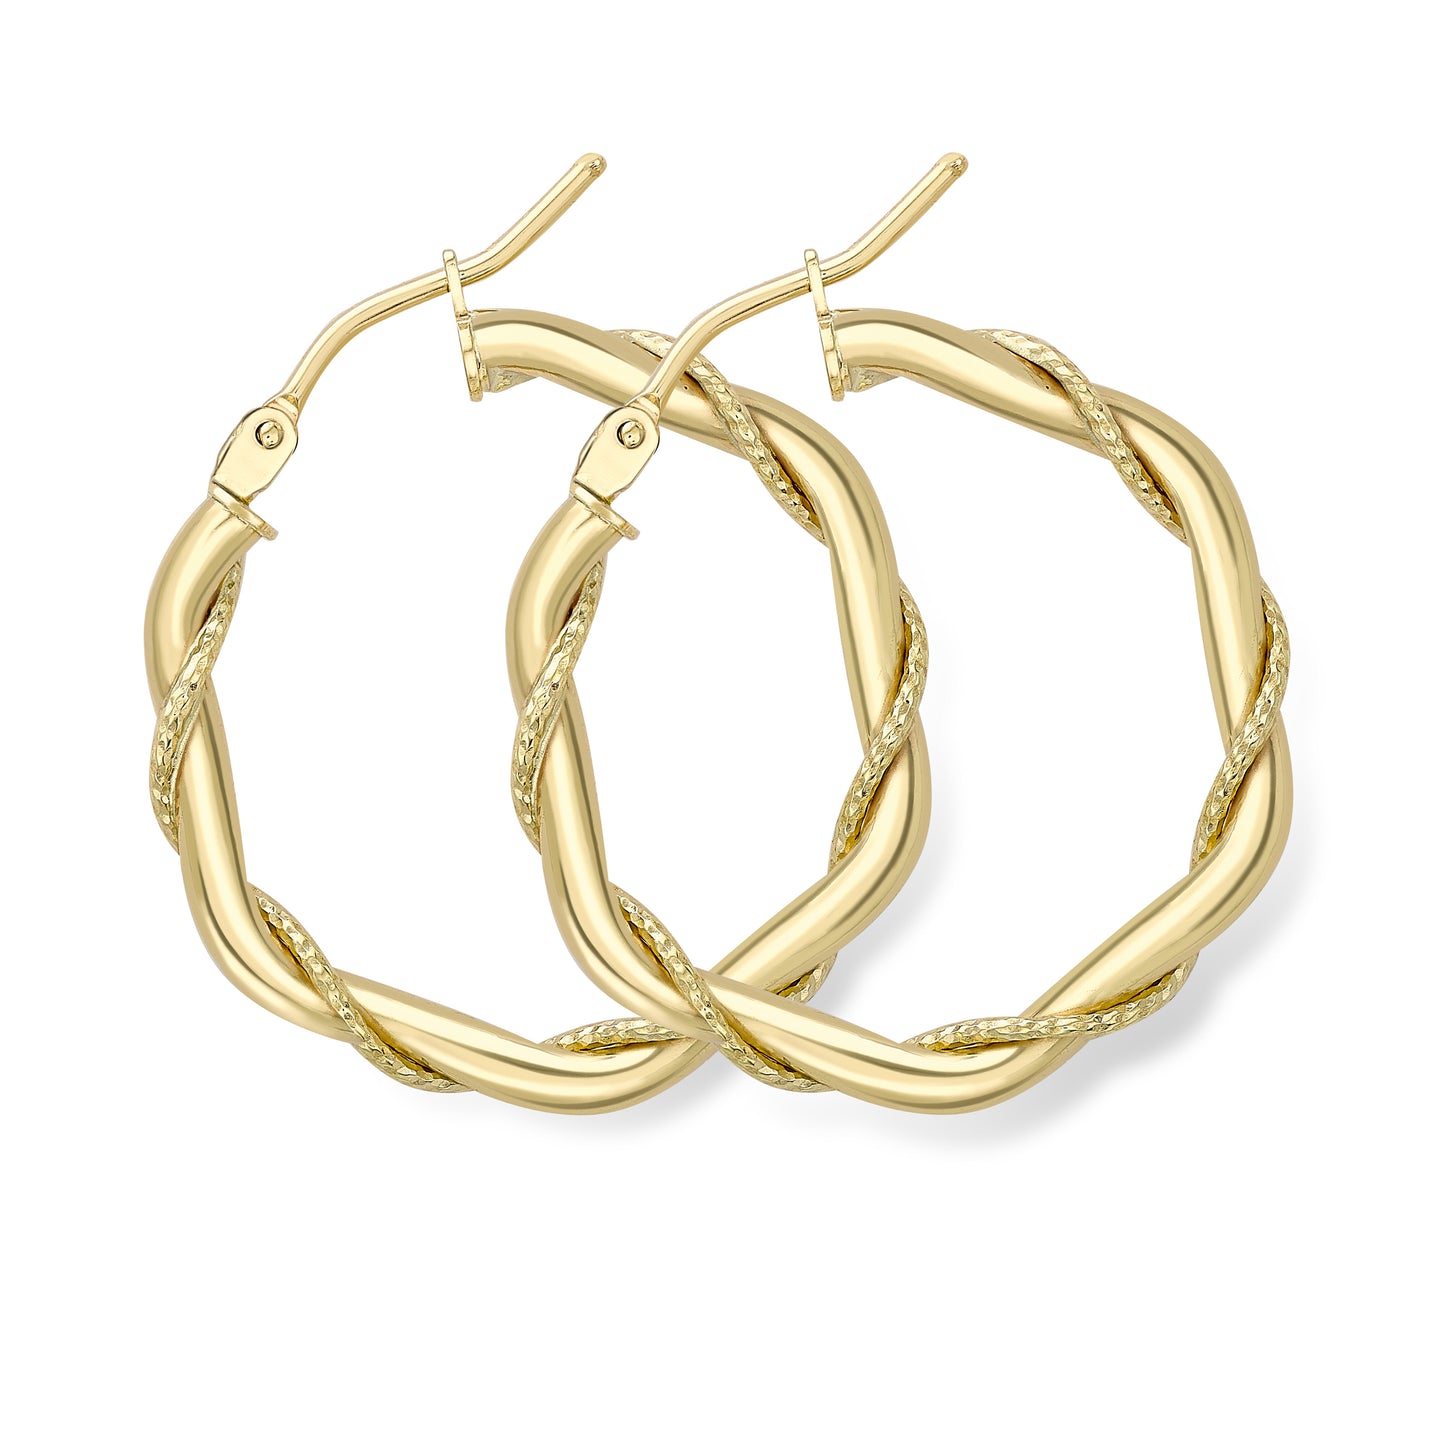 9ct Gold  Rope Entwined Twist Hexagonal Hoop Earrings 2mm - ERNR02323